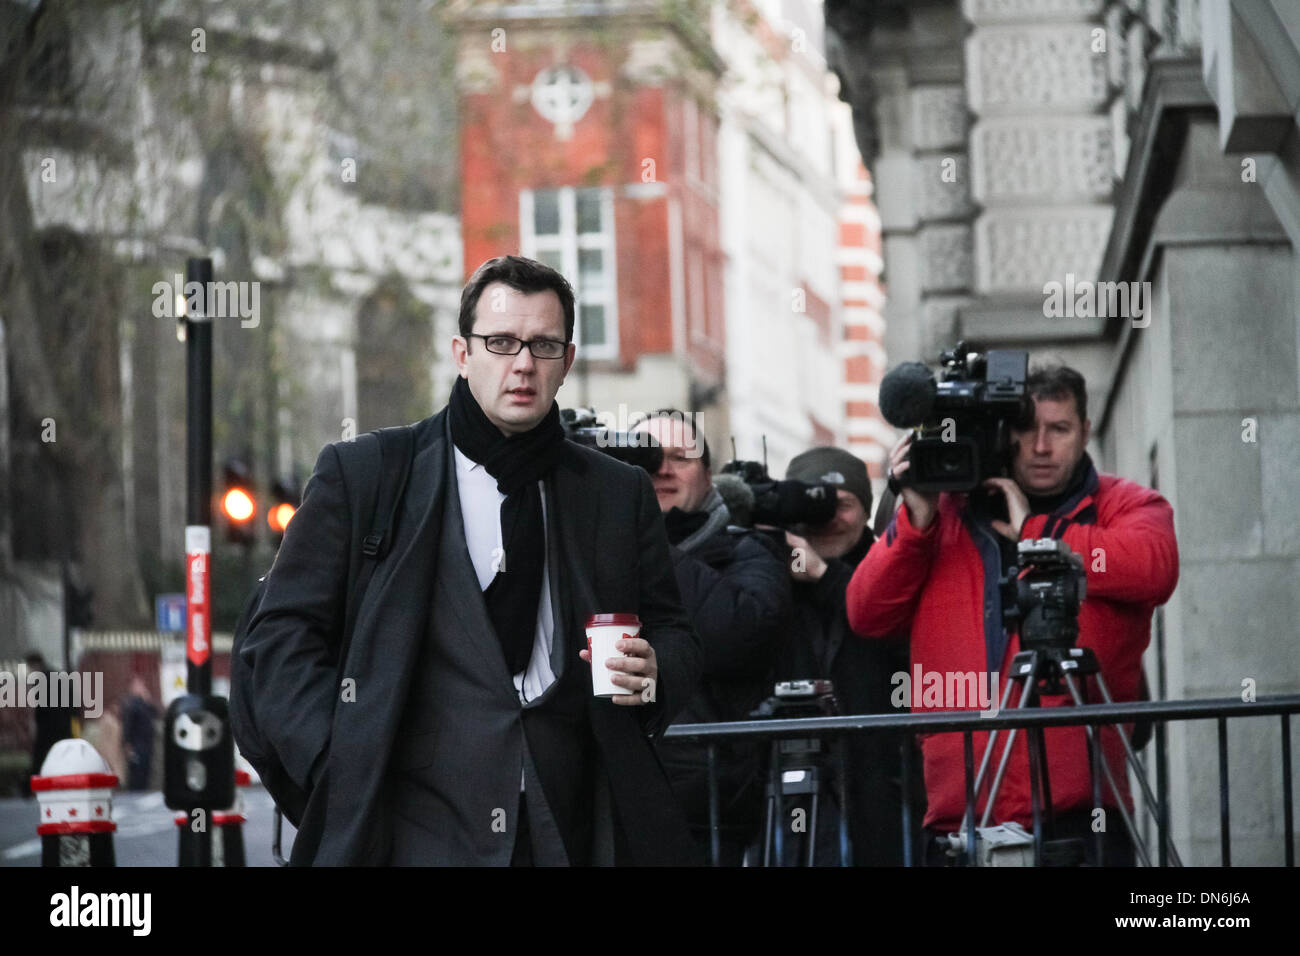 Andy Coulson arriva a Old Bailey Court a Londra per continuare la prova derivanti dalla News International phone hacking scandalo. Foto Stock